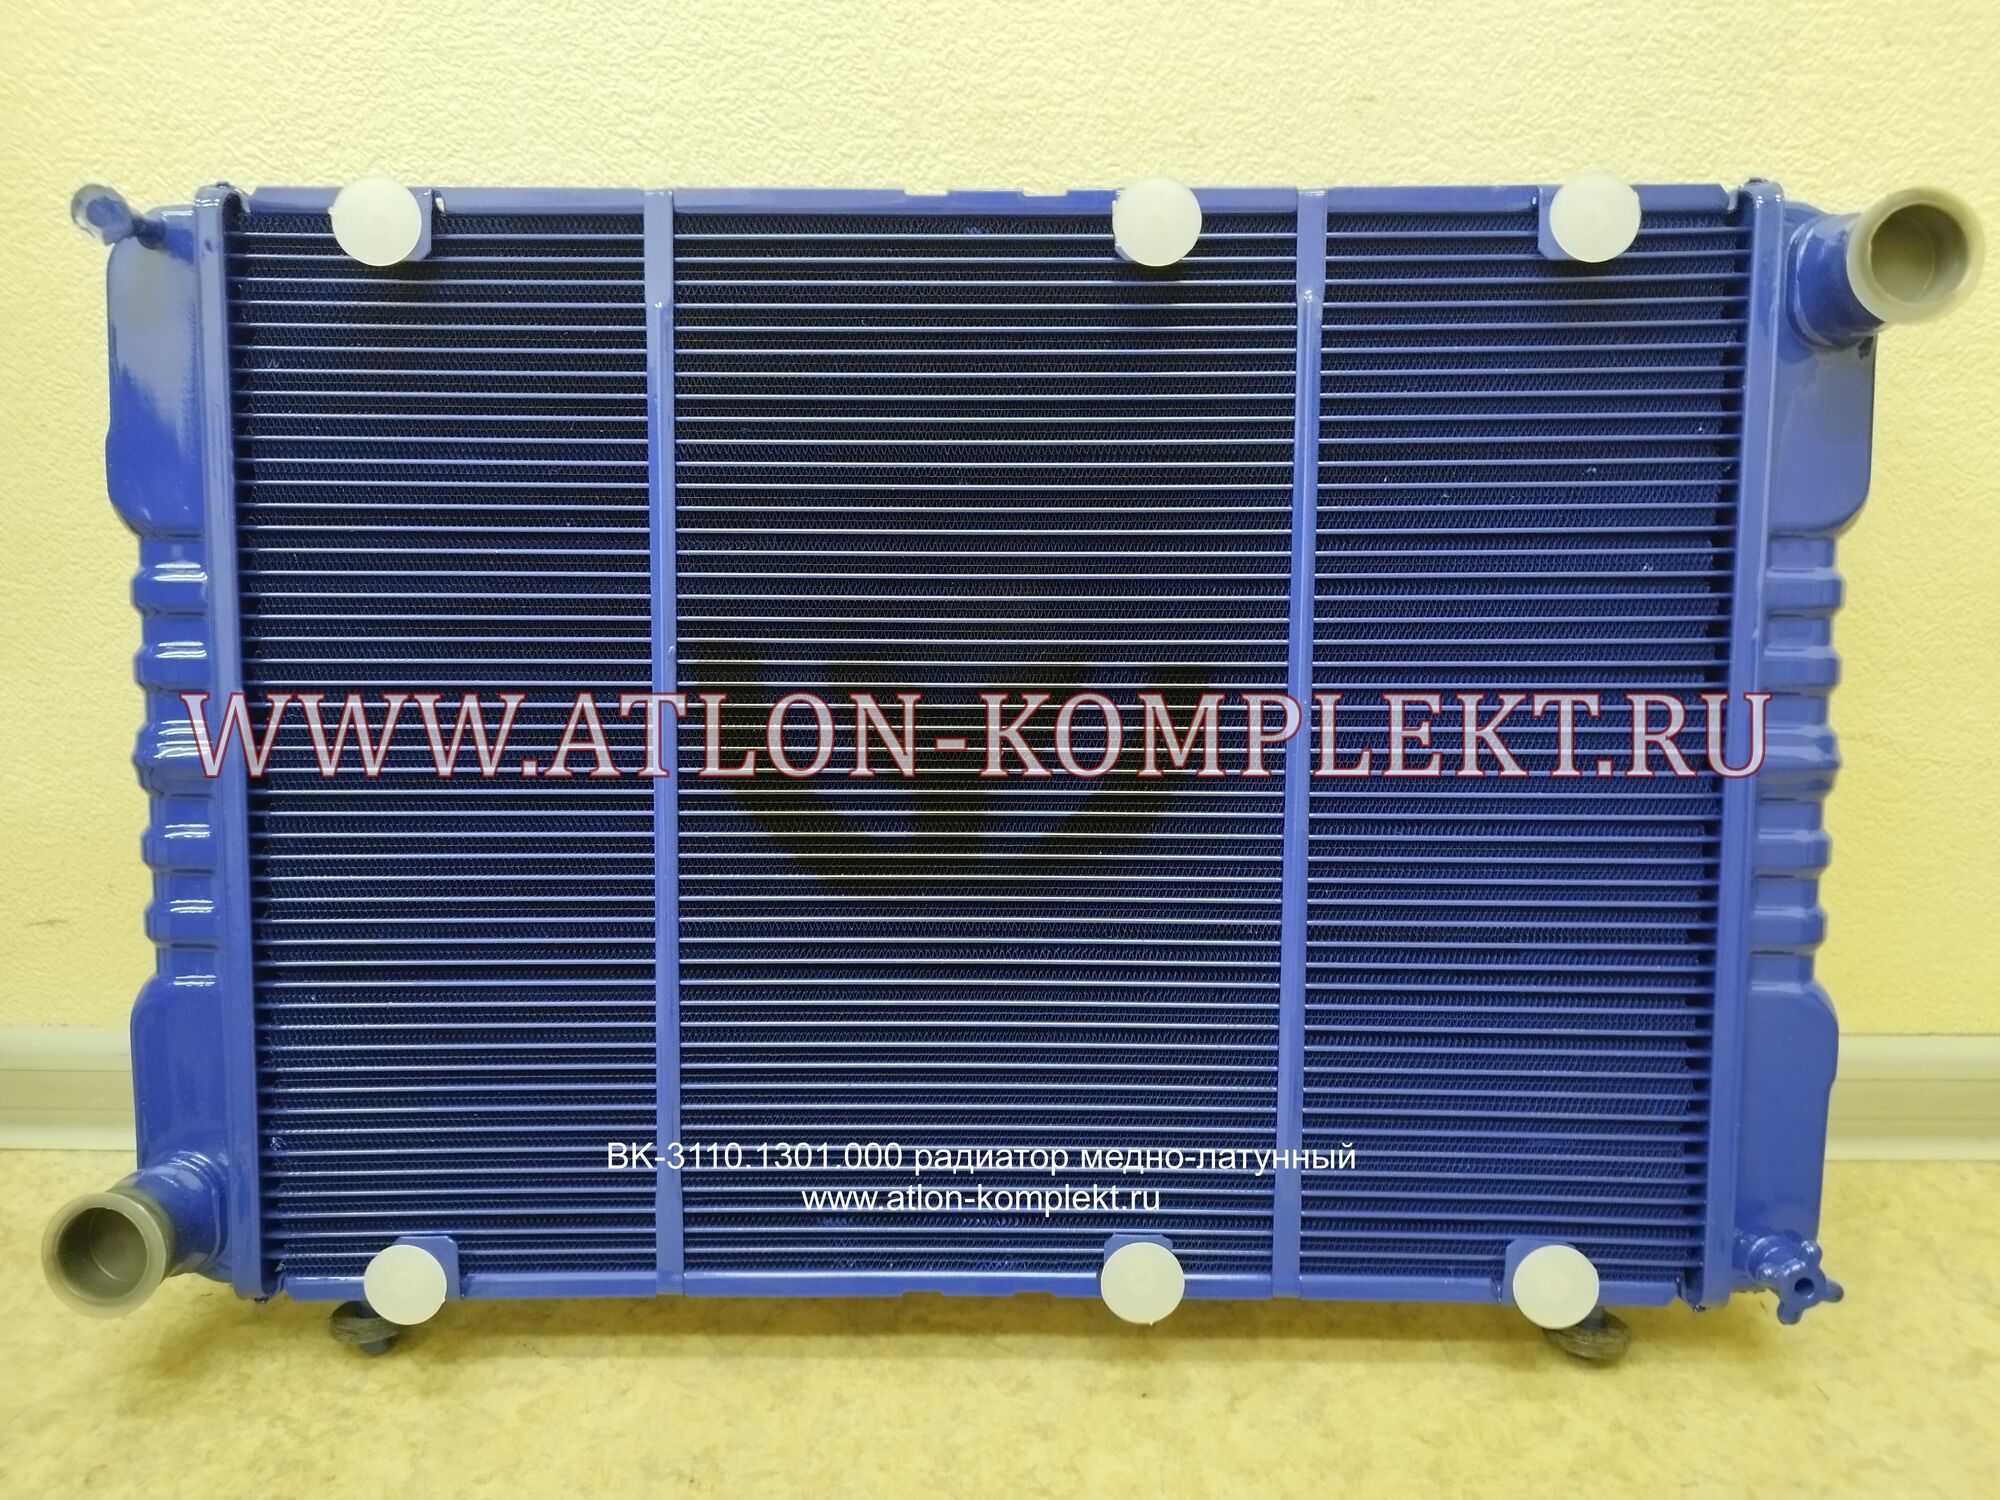 Радиатор Волга ГАЗ-3110 повышенной эффективности ВК-3110.1301.000 2-х рядный 1